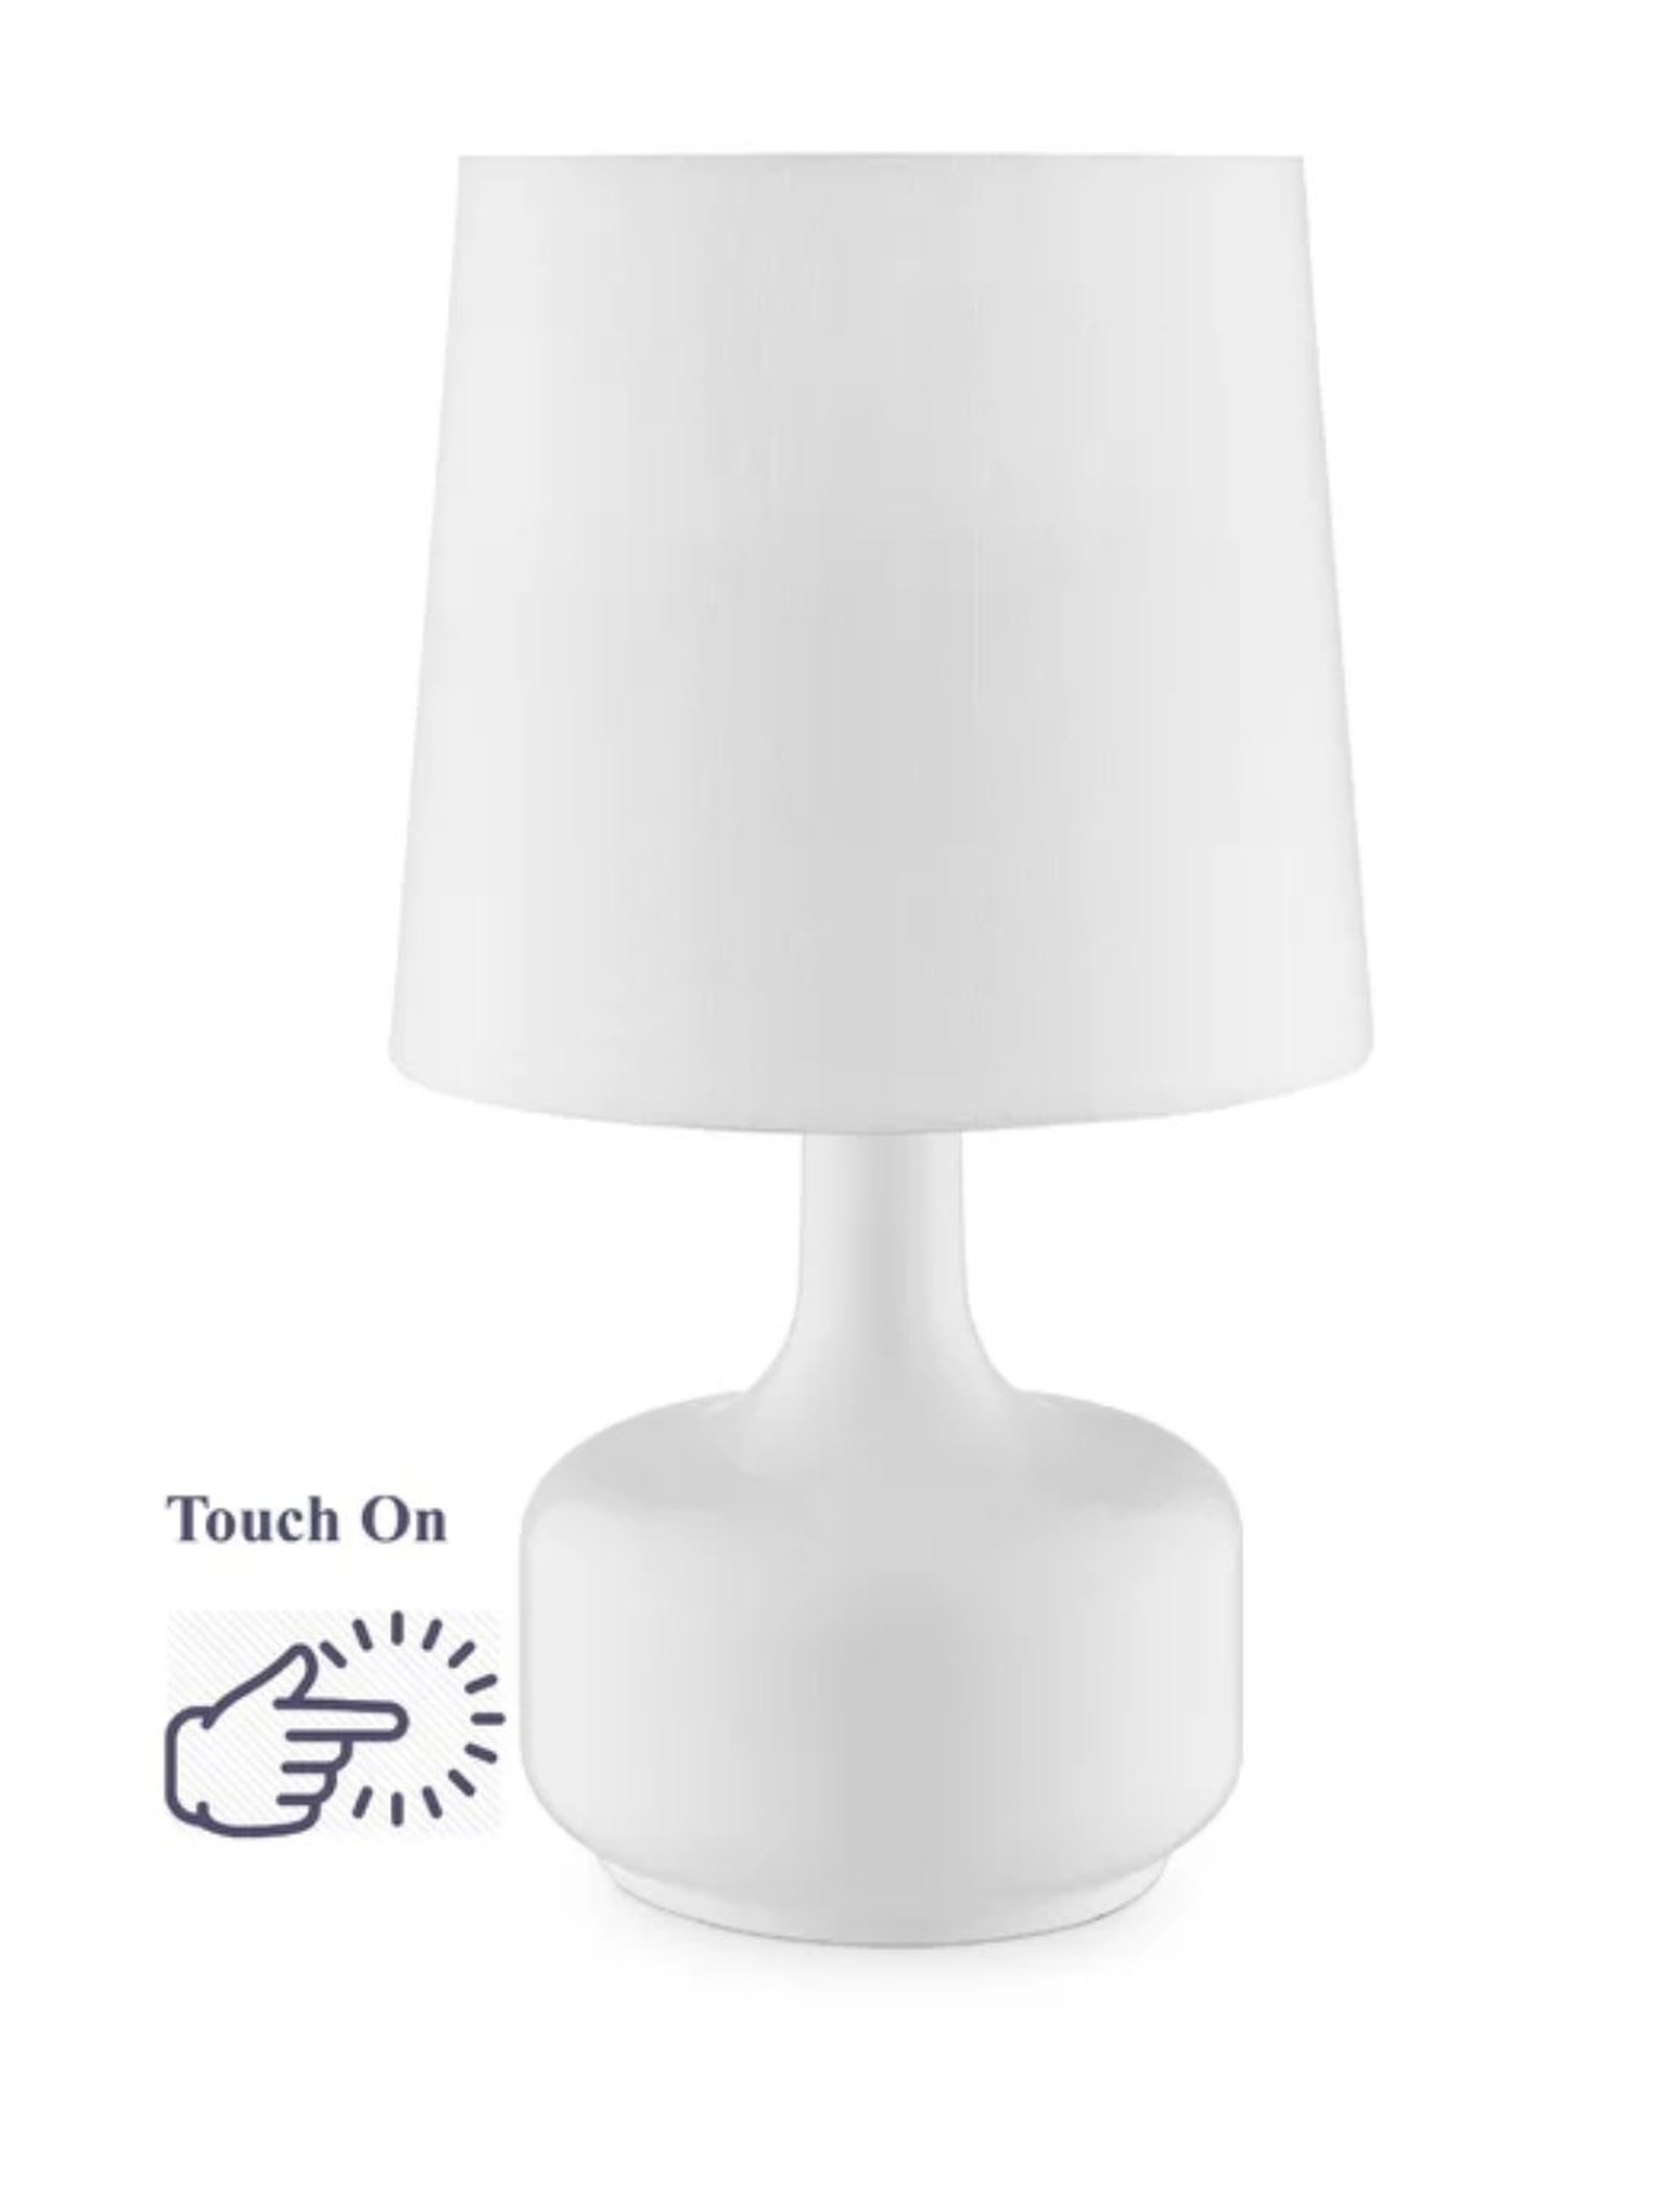 Astros 17" Table Lamp - Wayfair